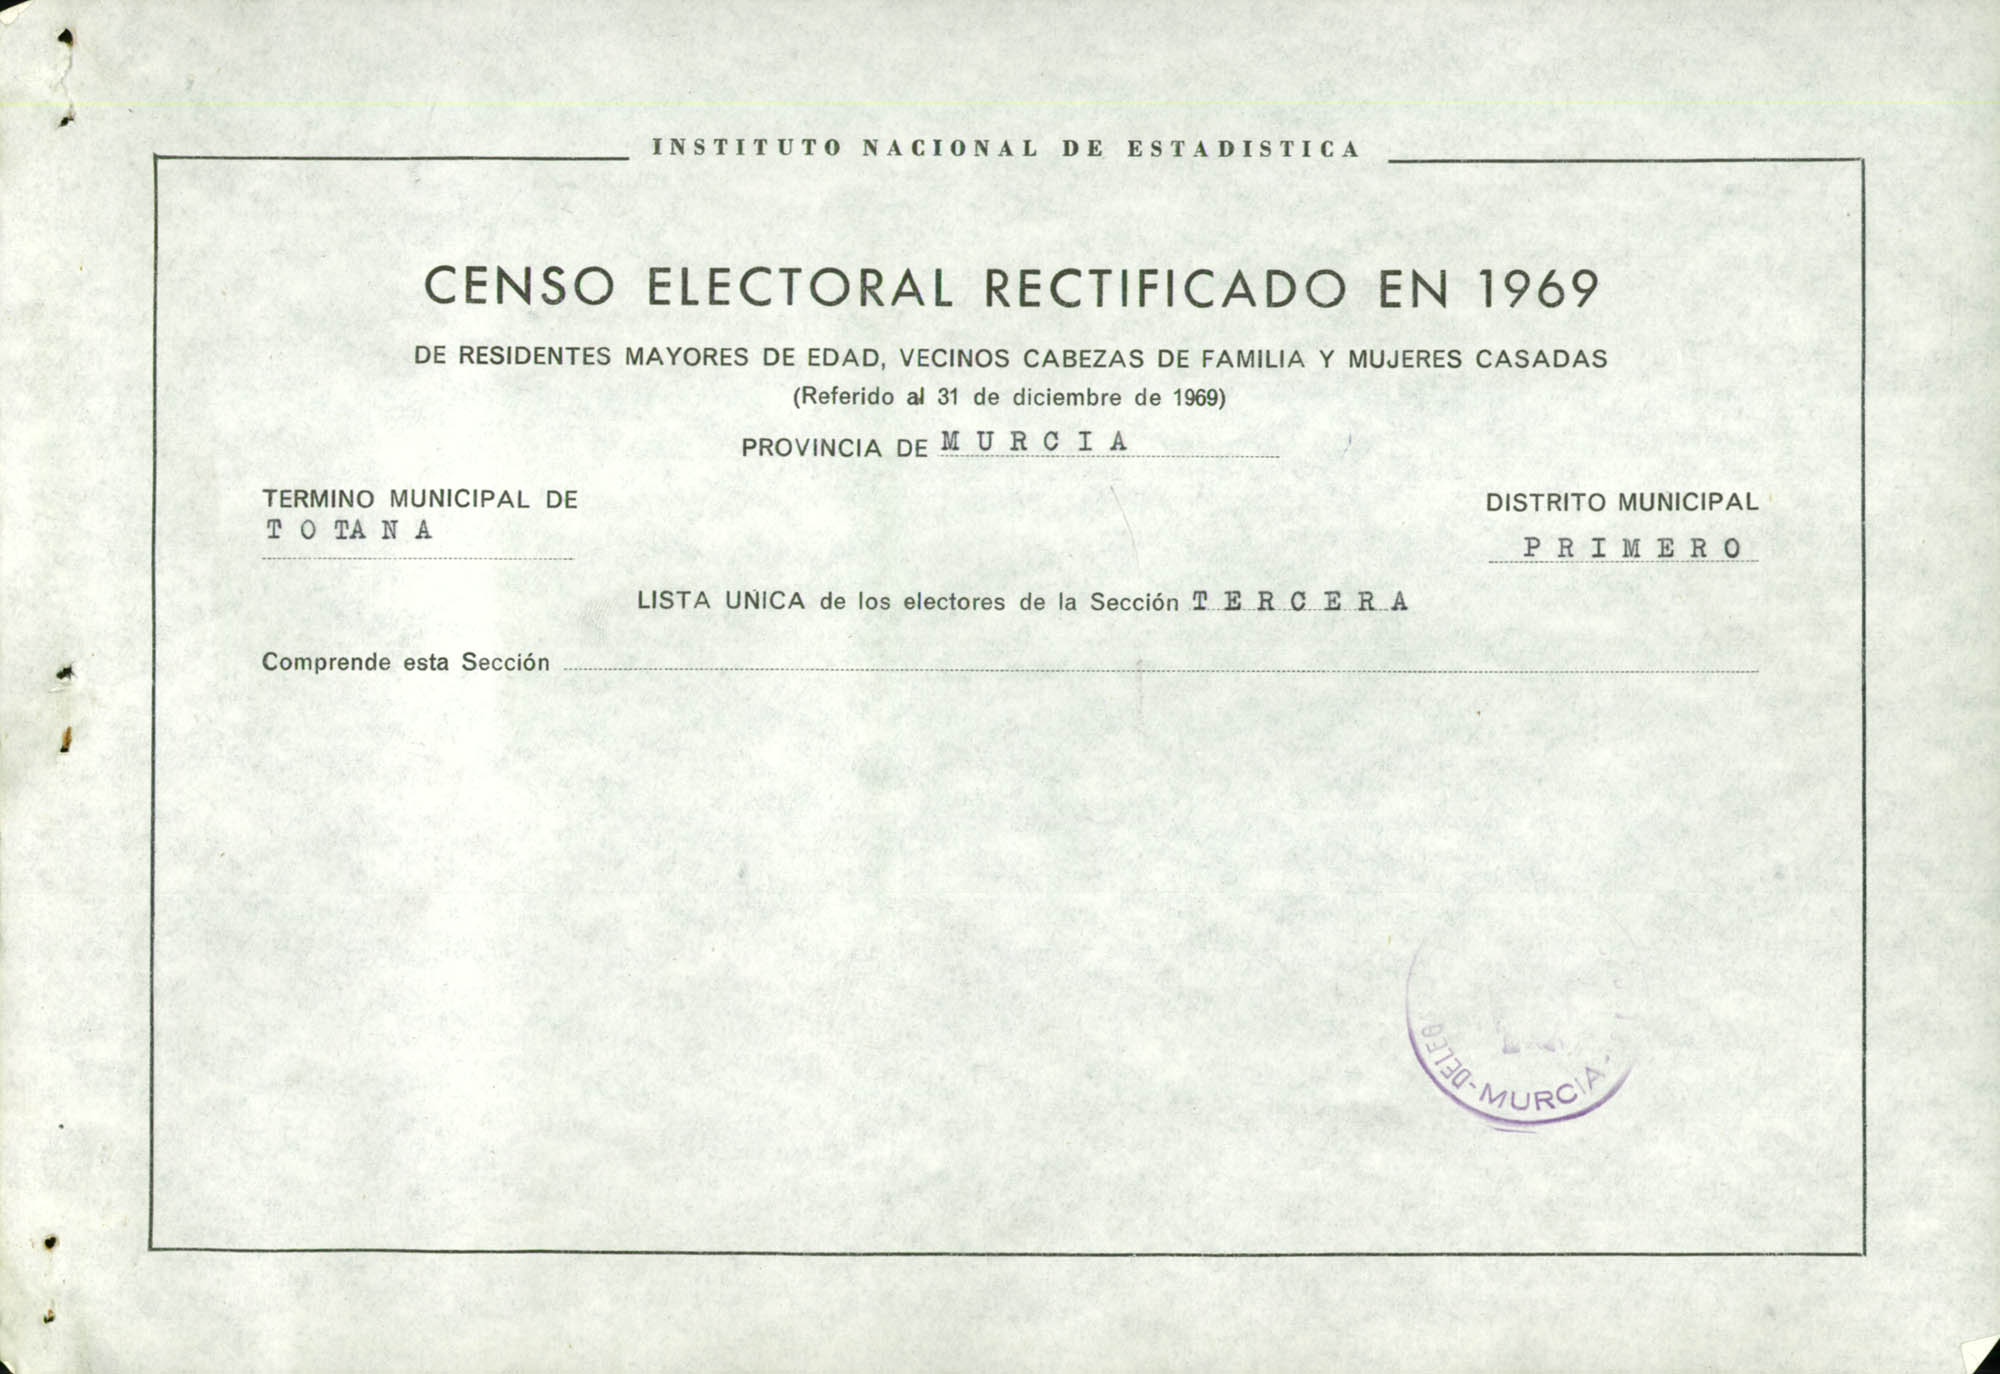 Censo electoral rectificado en 1969: listas definitivas de Totana, Distrito 1º, sección 3ª.